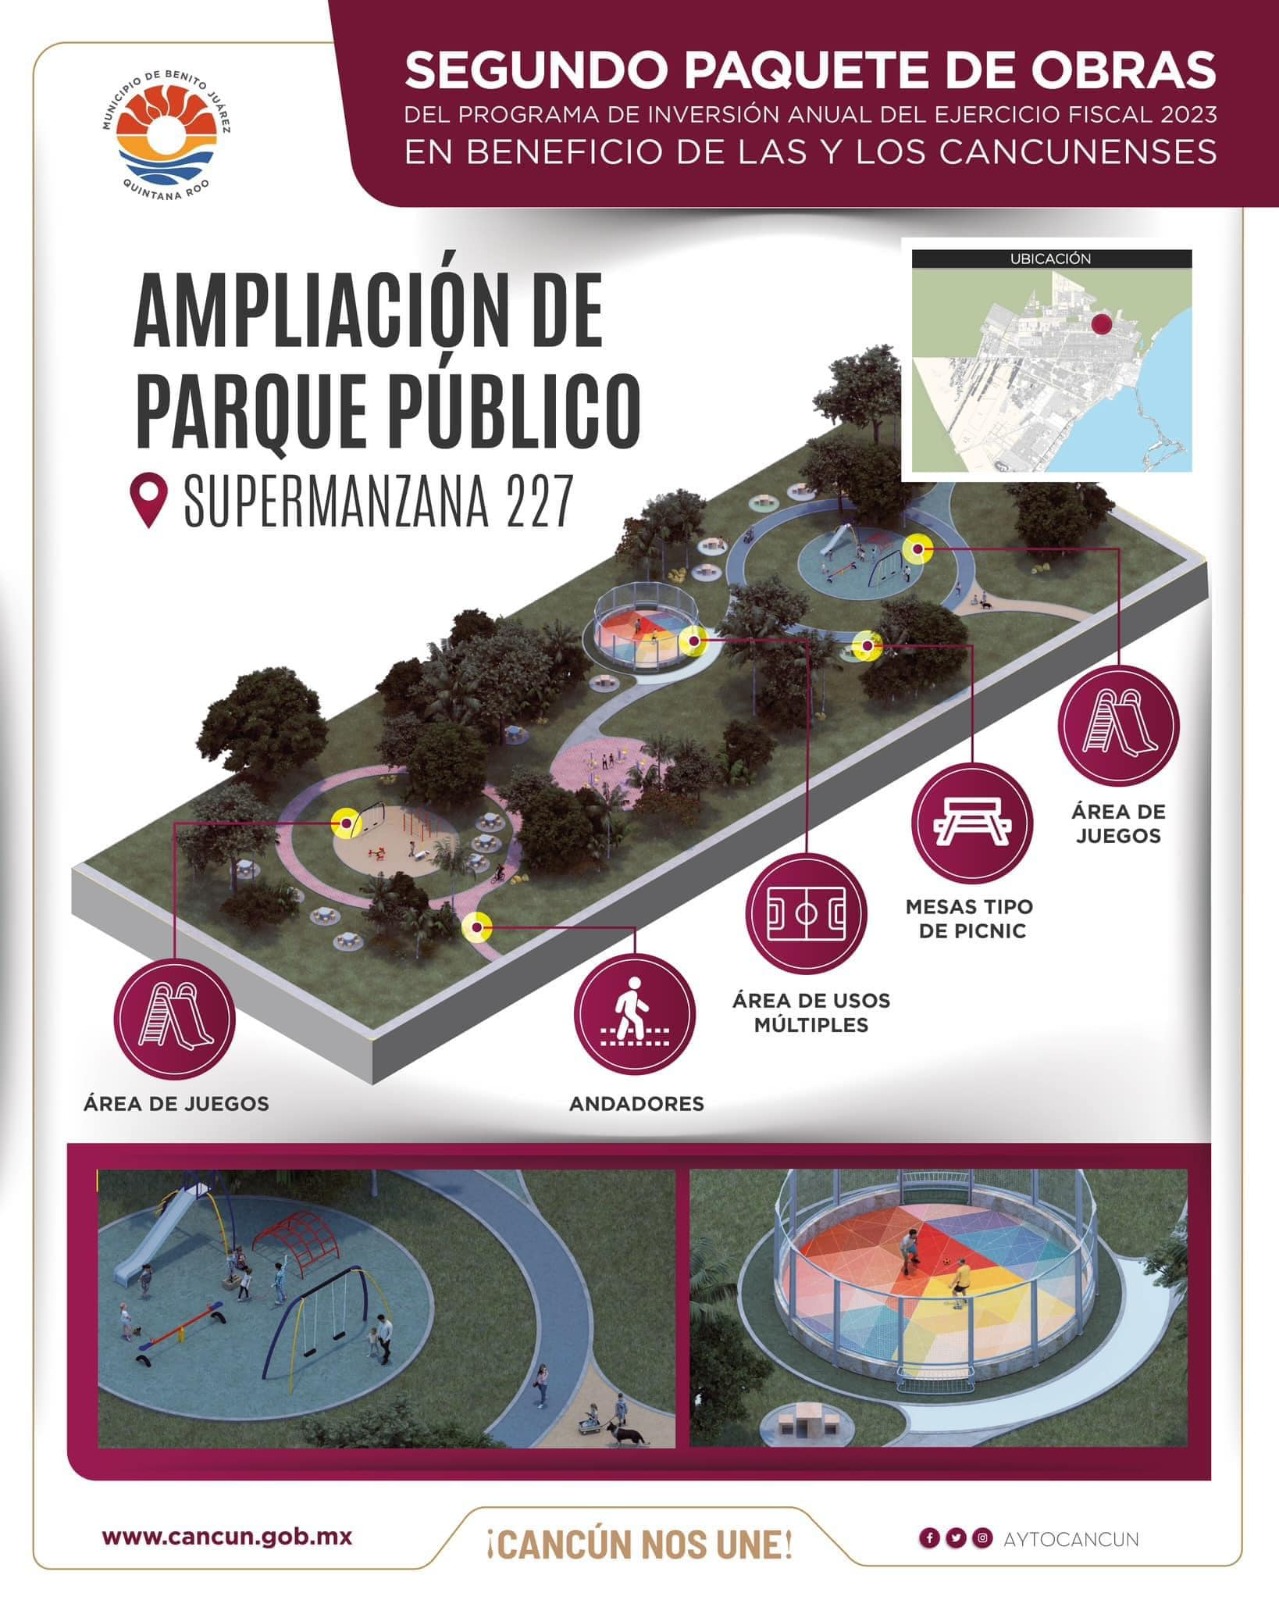 la Presidenta Municipal, Ana Paty Peralta, aseguró que este año Cancún continuará consolidando proyectos históricos de infraestructura